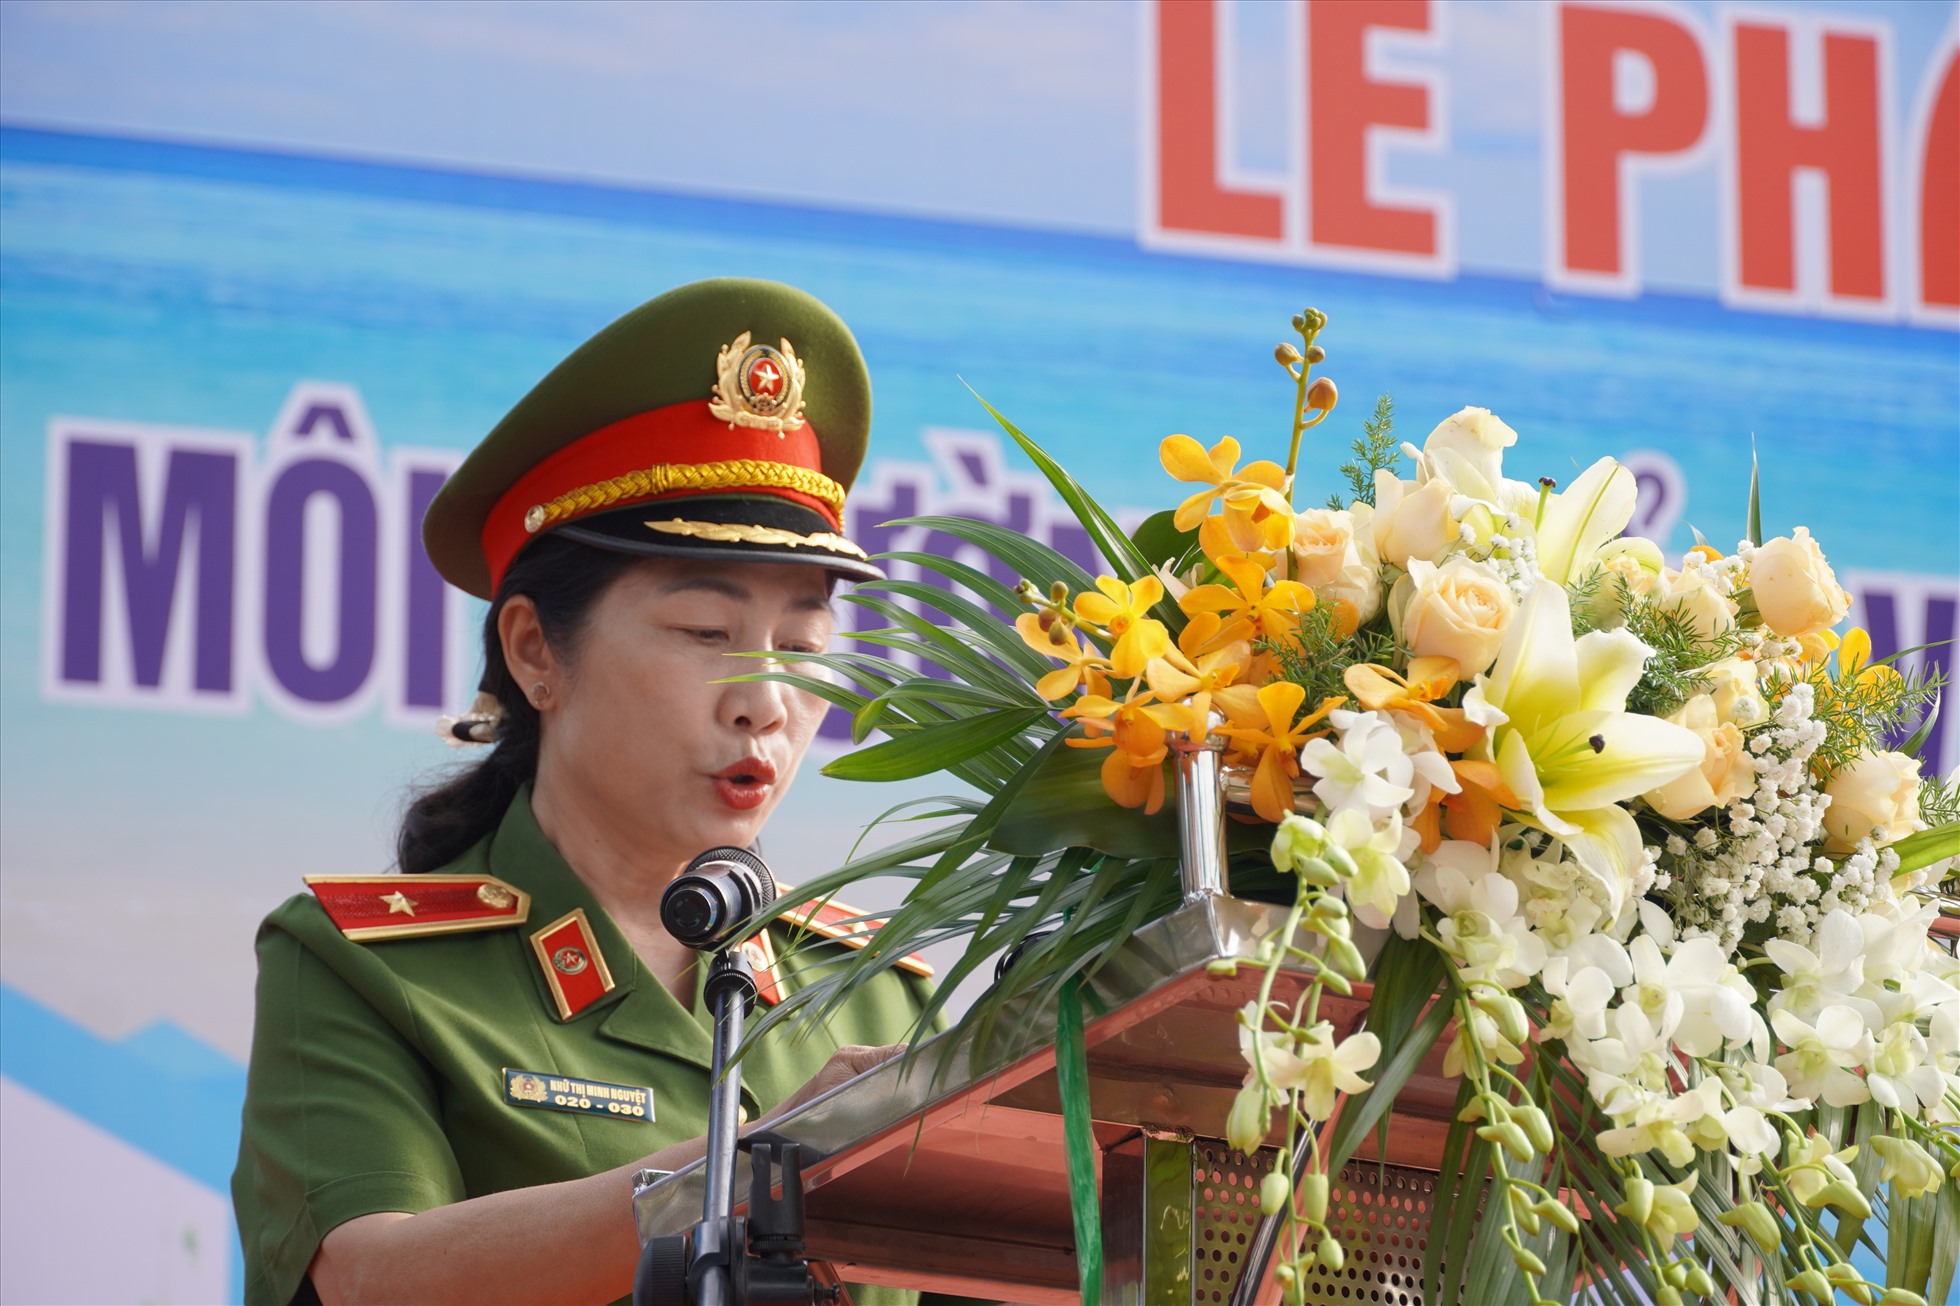 Thiếu tướng Nhữ Thị Minh Nguyệt phát biểu tại lễ phát động bảo vệ môi trường biển và hải đảo. Ảnh: Thành An